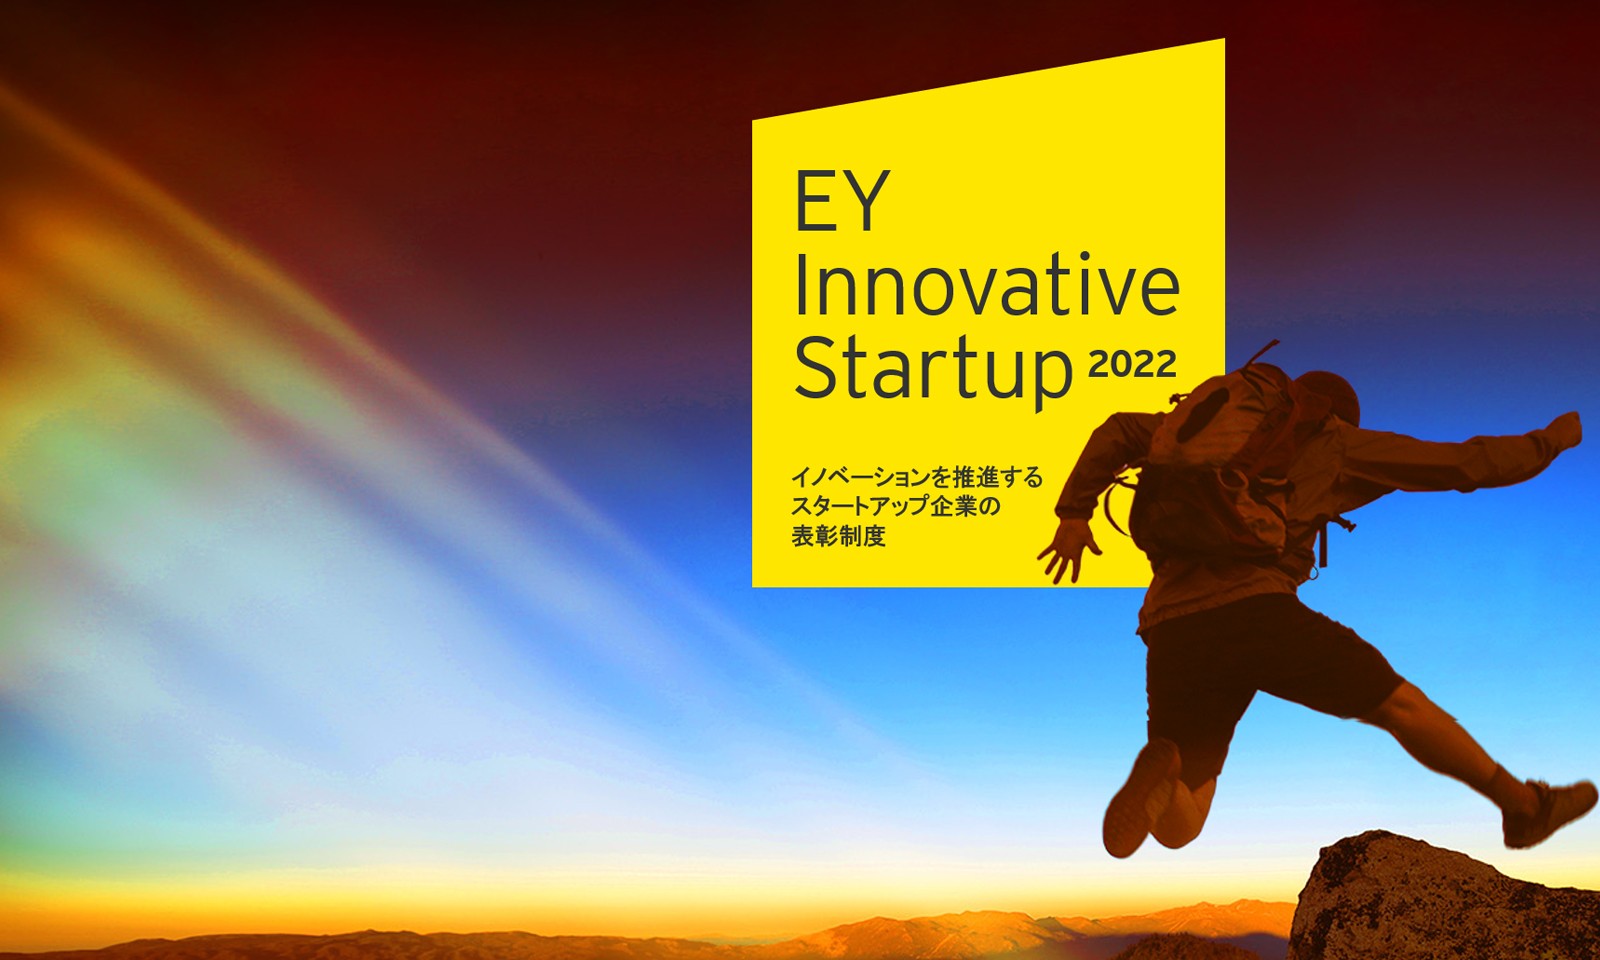 EY Innovative Startup 2022